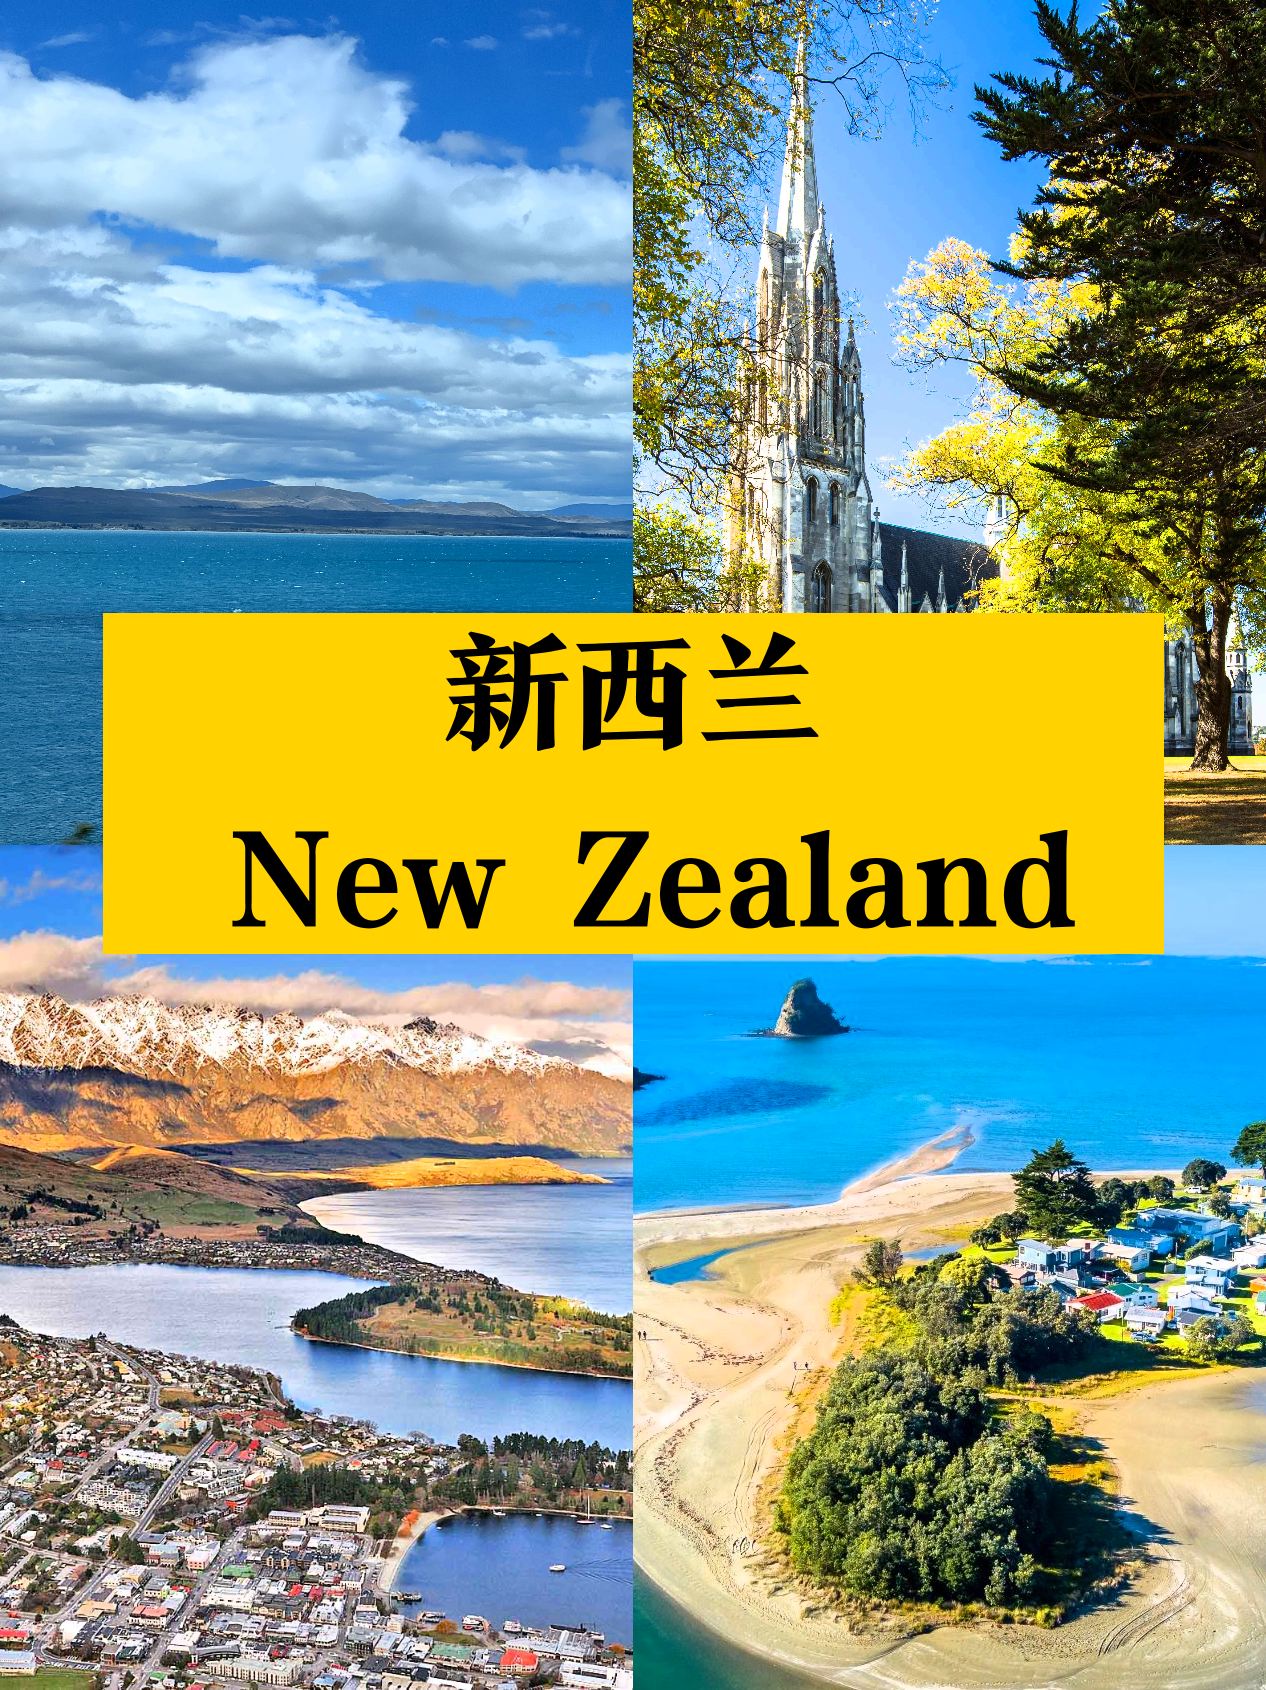 很喜欢新西兰😭真的不舍得回来❗